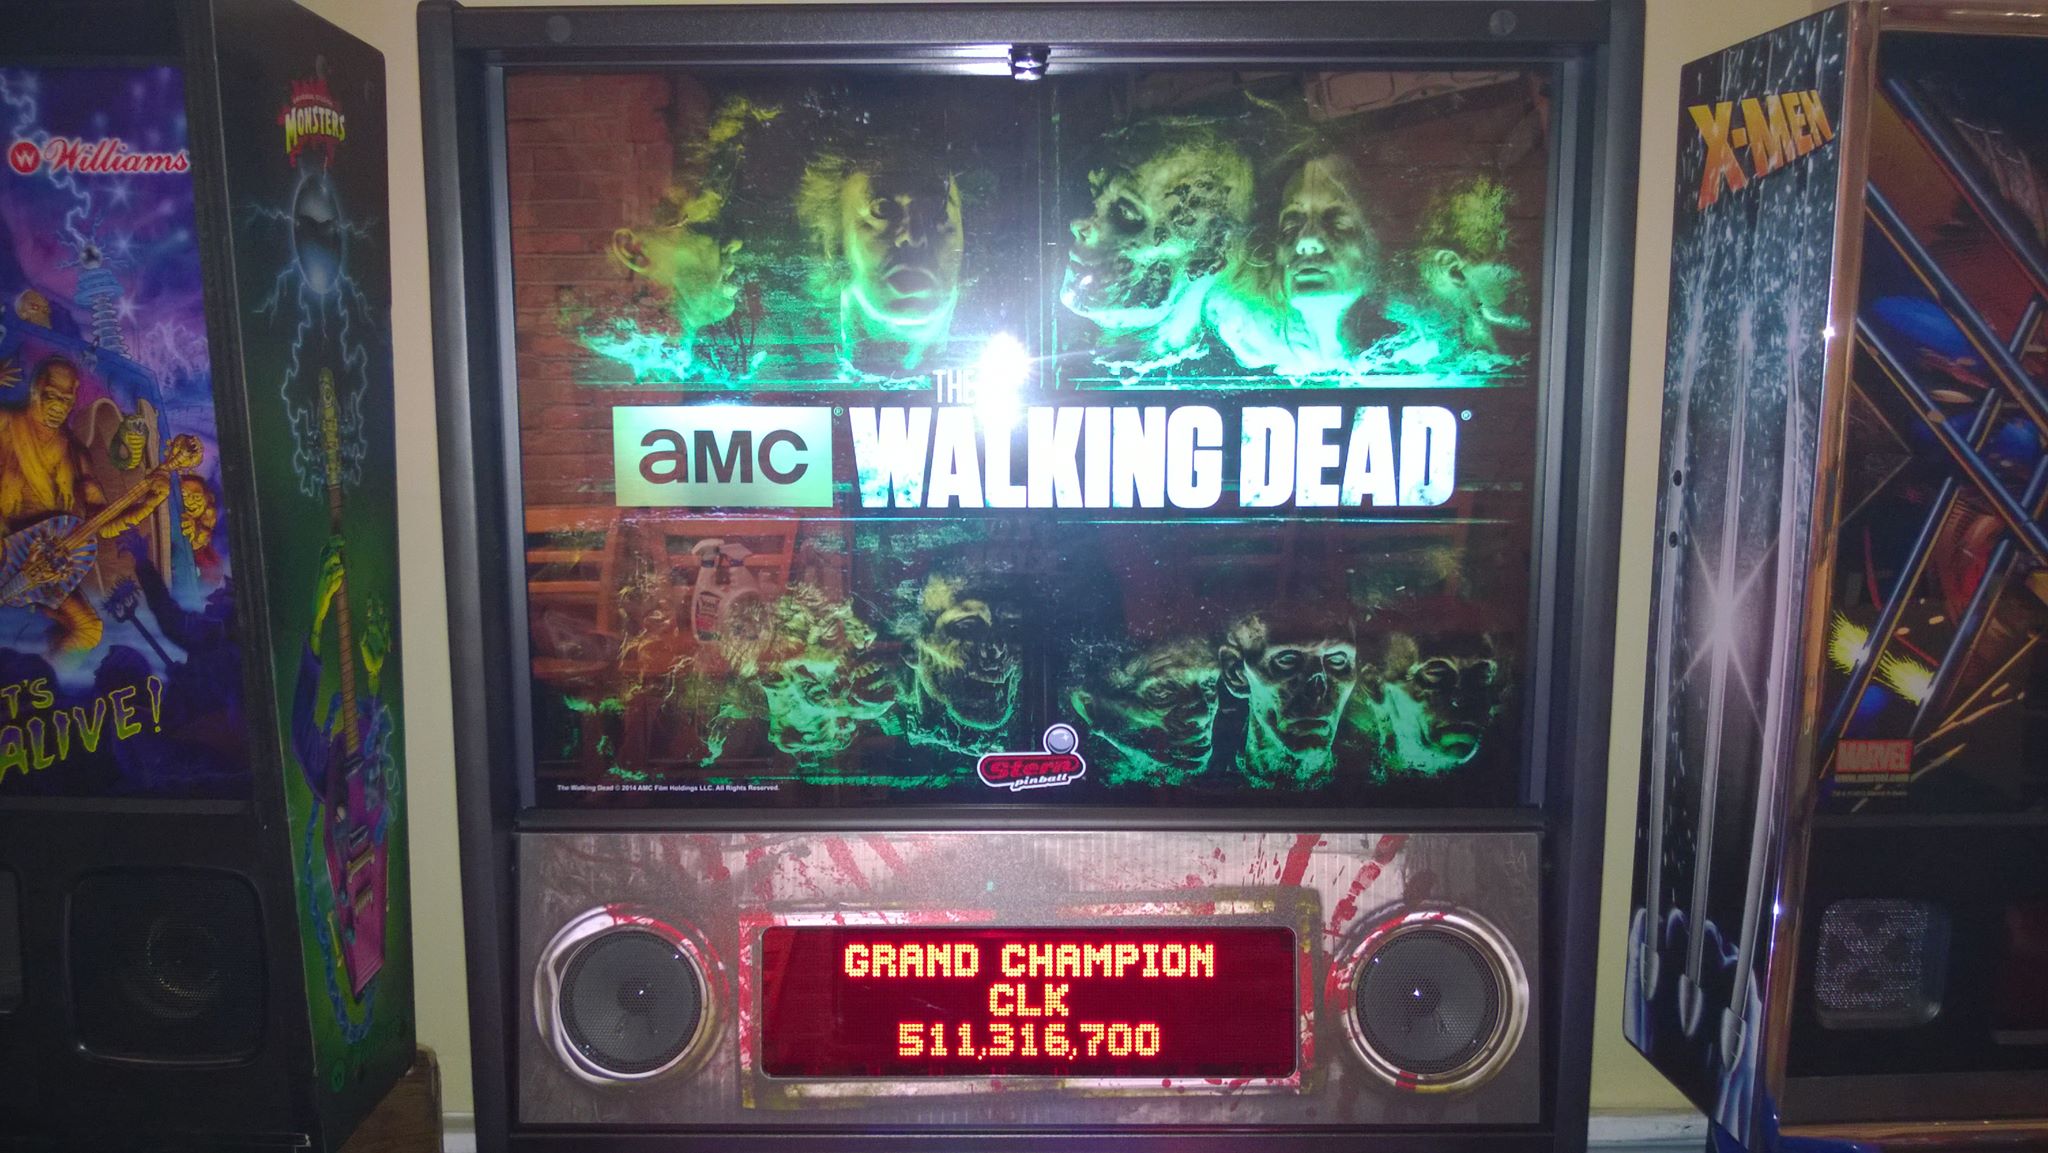 The Walking Dead 511,316,700 points